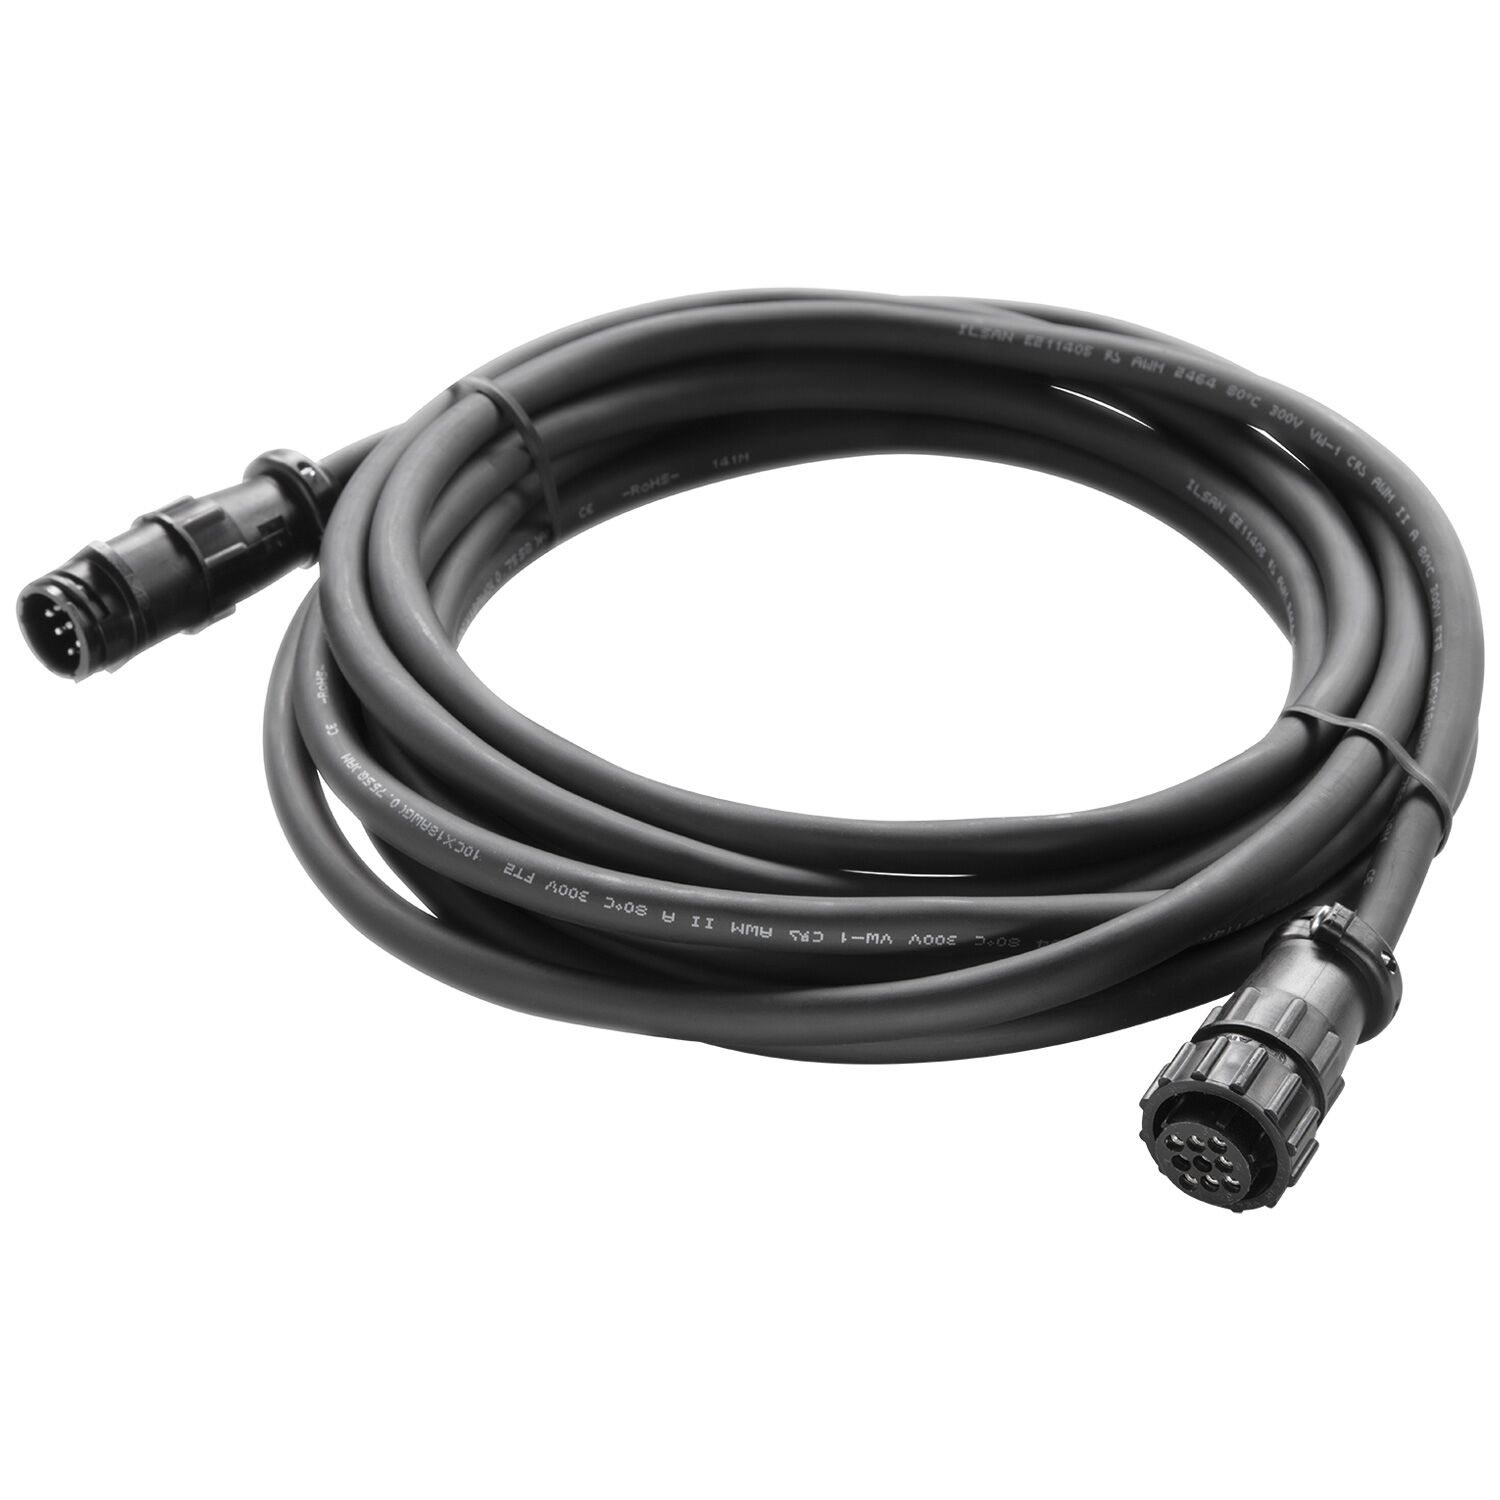 Photos - Cable (video, audio, USB) Westcott 7597 Flex Cine Extension Cable  (16')